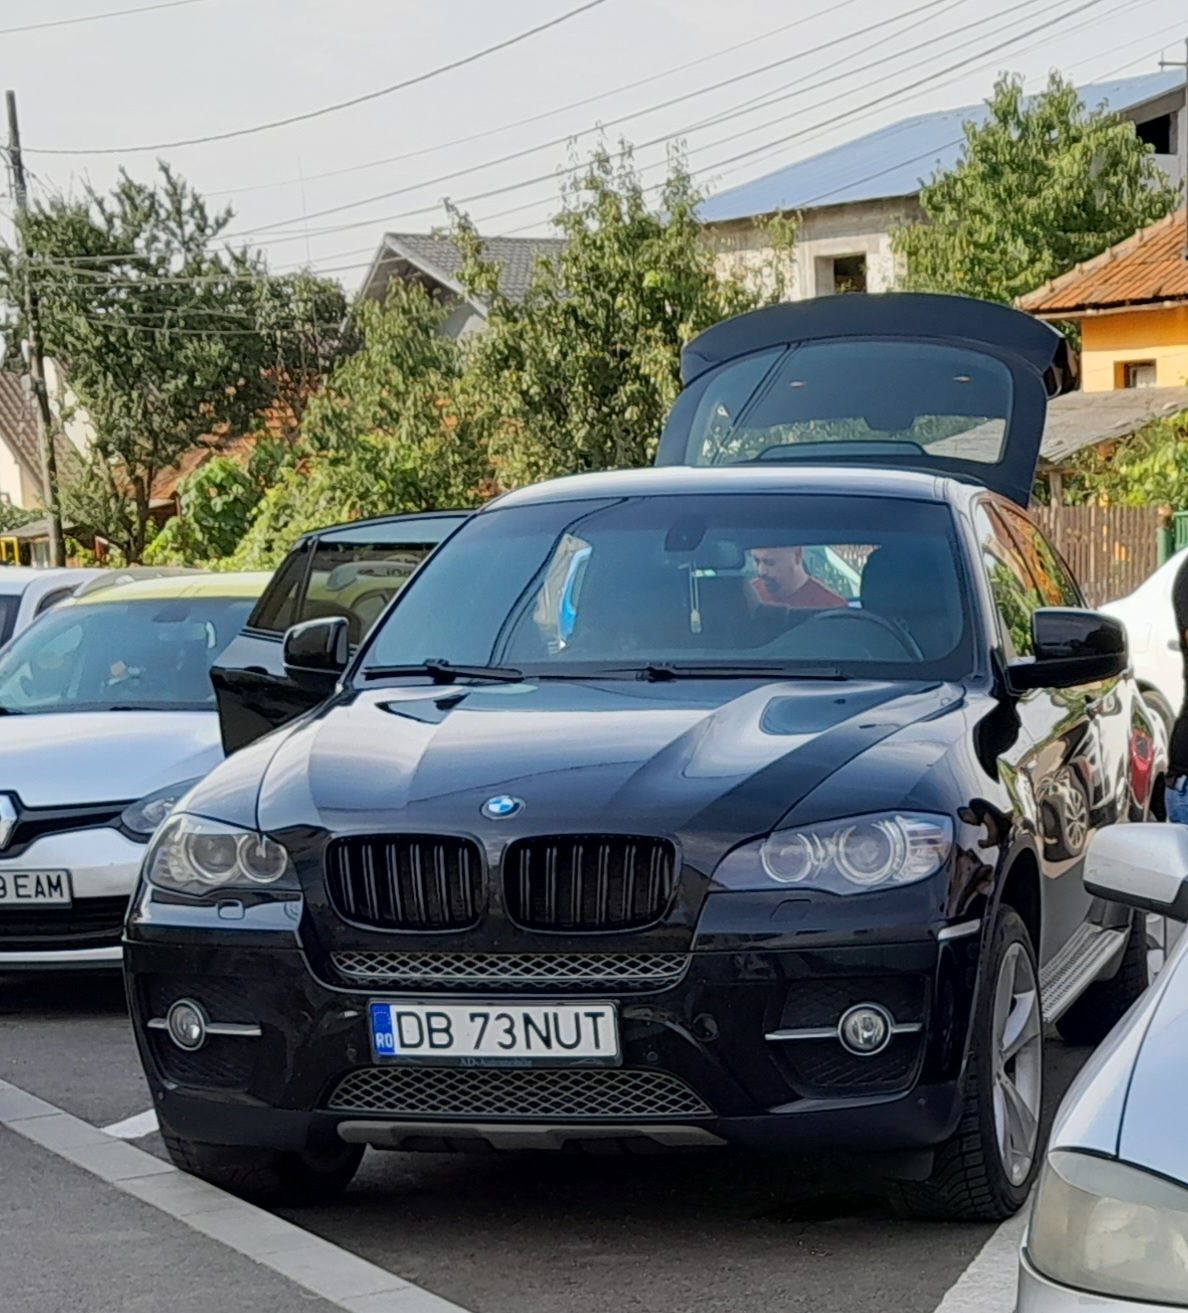 Vând BMW x6 impecabil